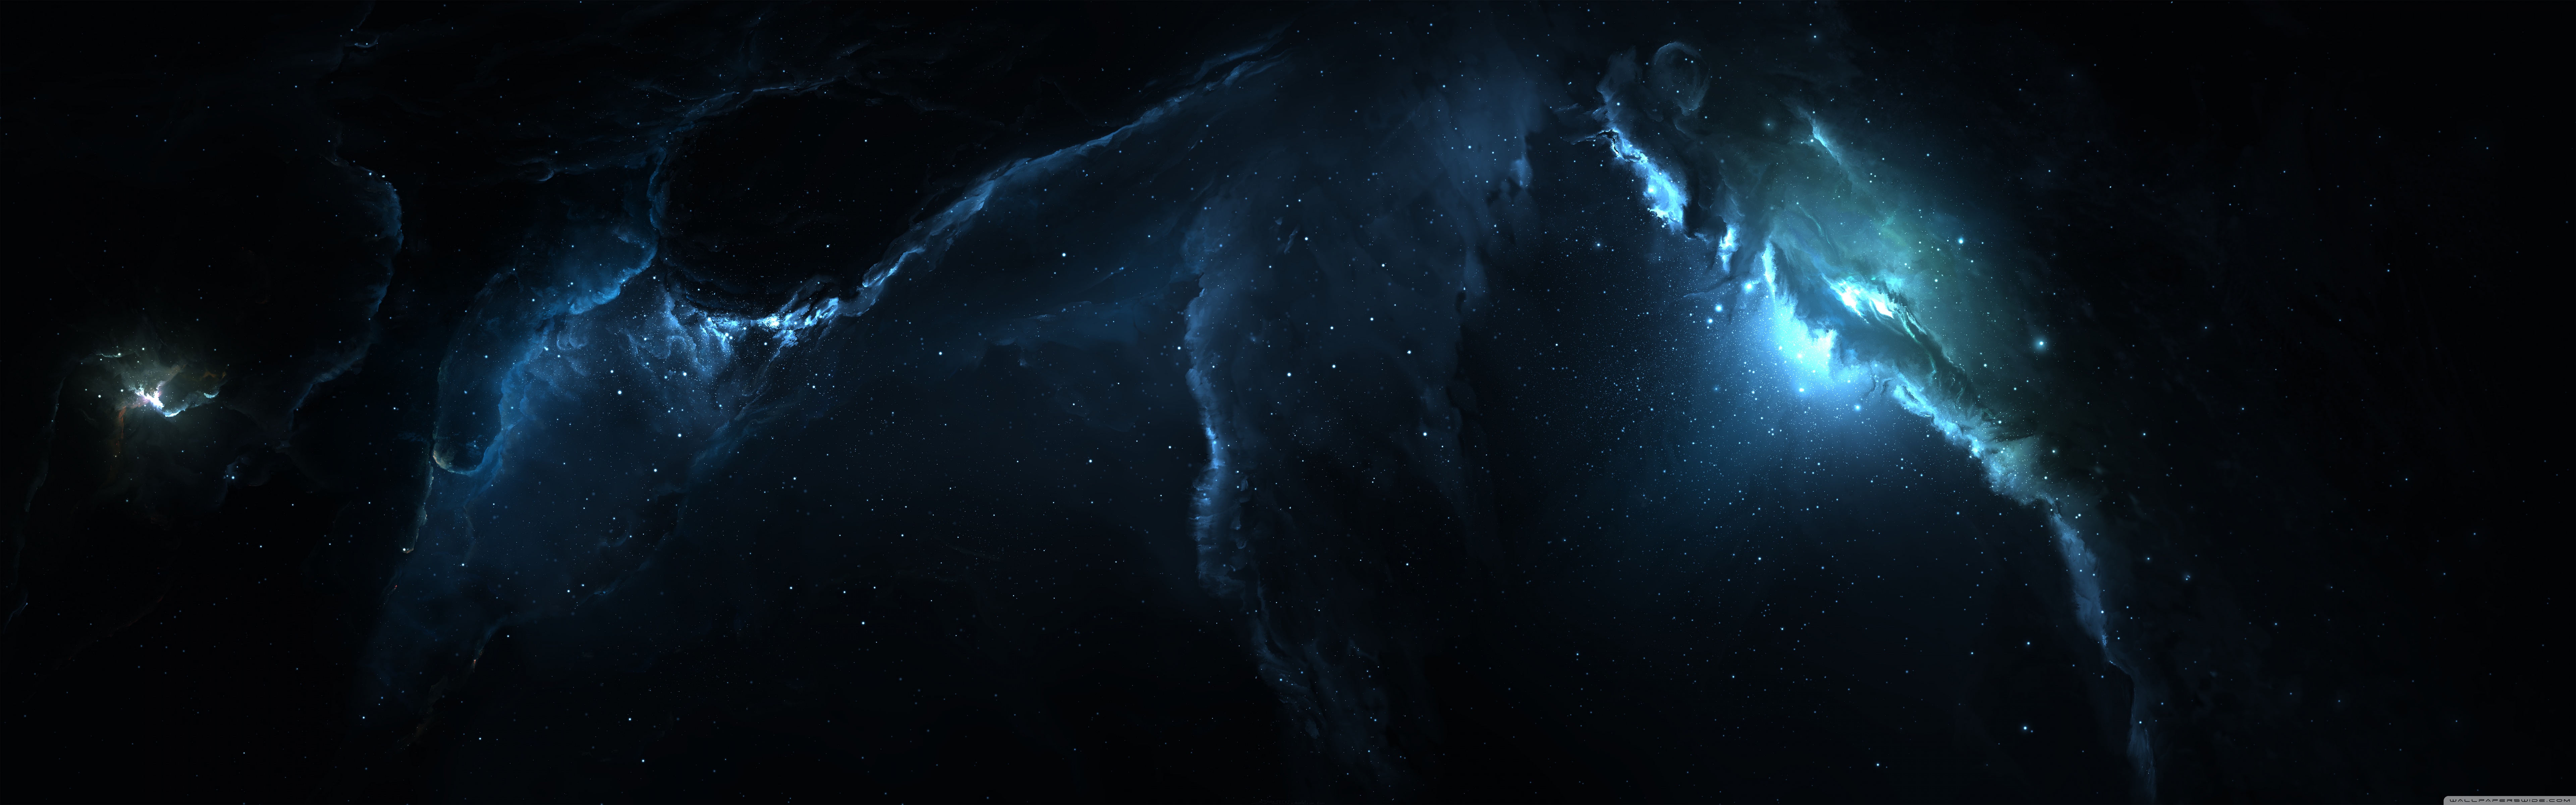 Được tạo ra từ hàng triệu sao và bụi vũ trụ, chúng tôi tự hào giới thiệu đến bạn bức tranh nền Nebula 3 Dual Monitor Wallpaper vô cùng độc đáo và hấp dẫn. Hãy cùng khám phá hình ảnh tuyệt đẹp này và trải nghiệm sự tuyệt vời của nó trên hai màn hình của bạn.